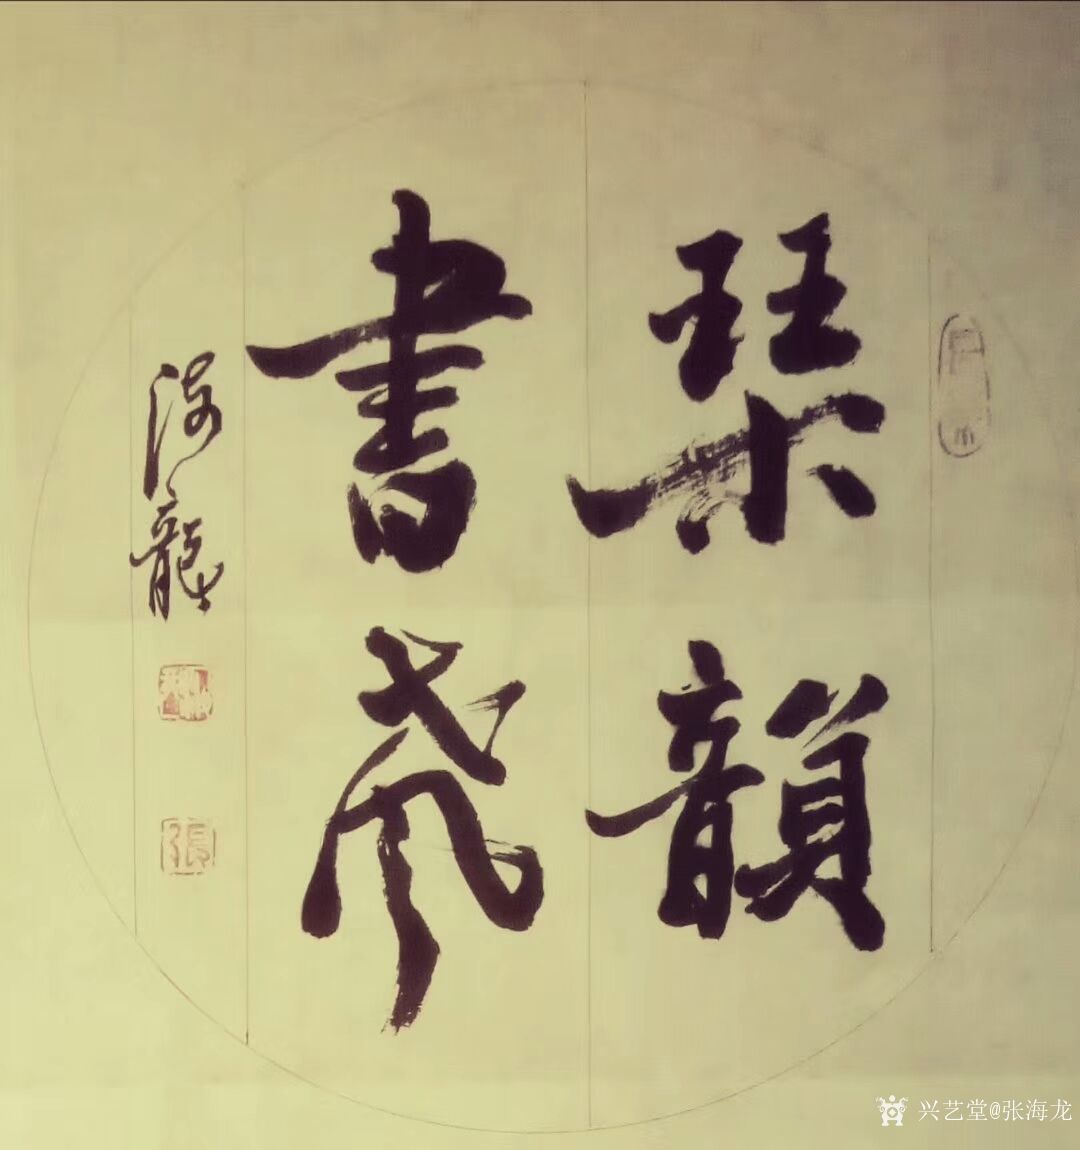 艺术家张海龙日记:书法作品欣赏《室雅兰香》,《惠风和畅》,《琴韵书